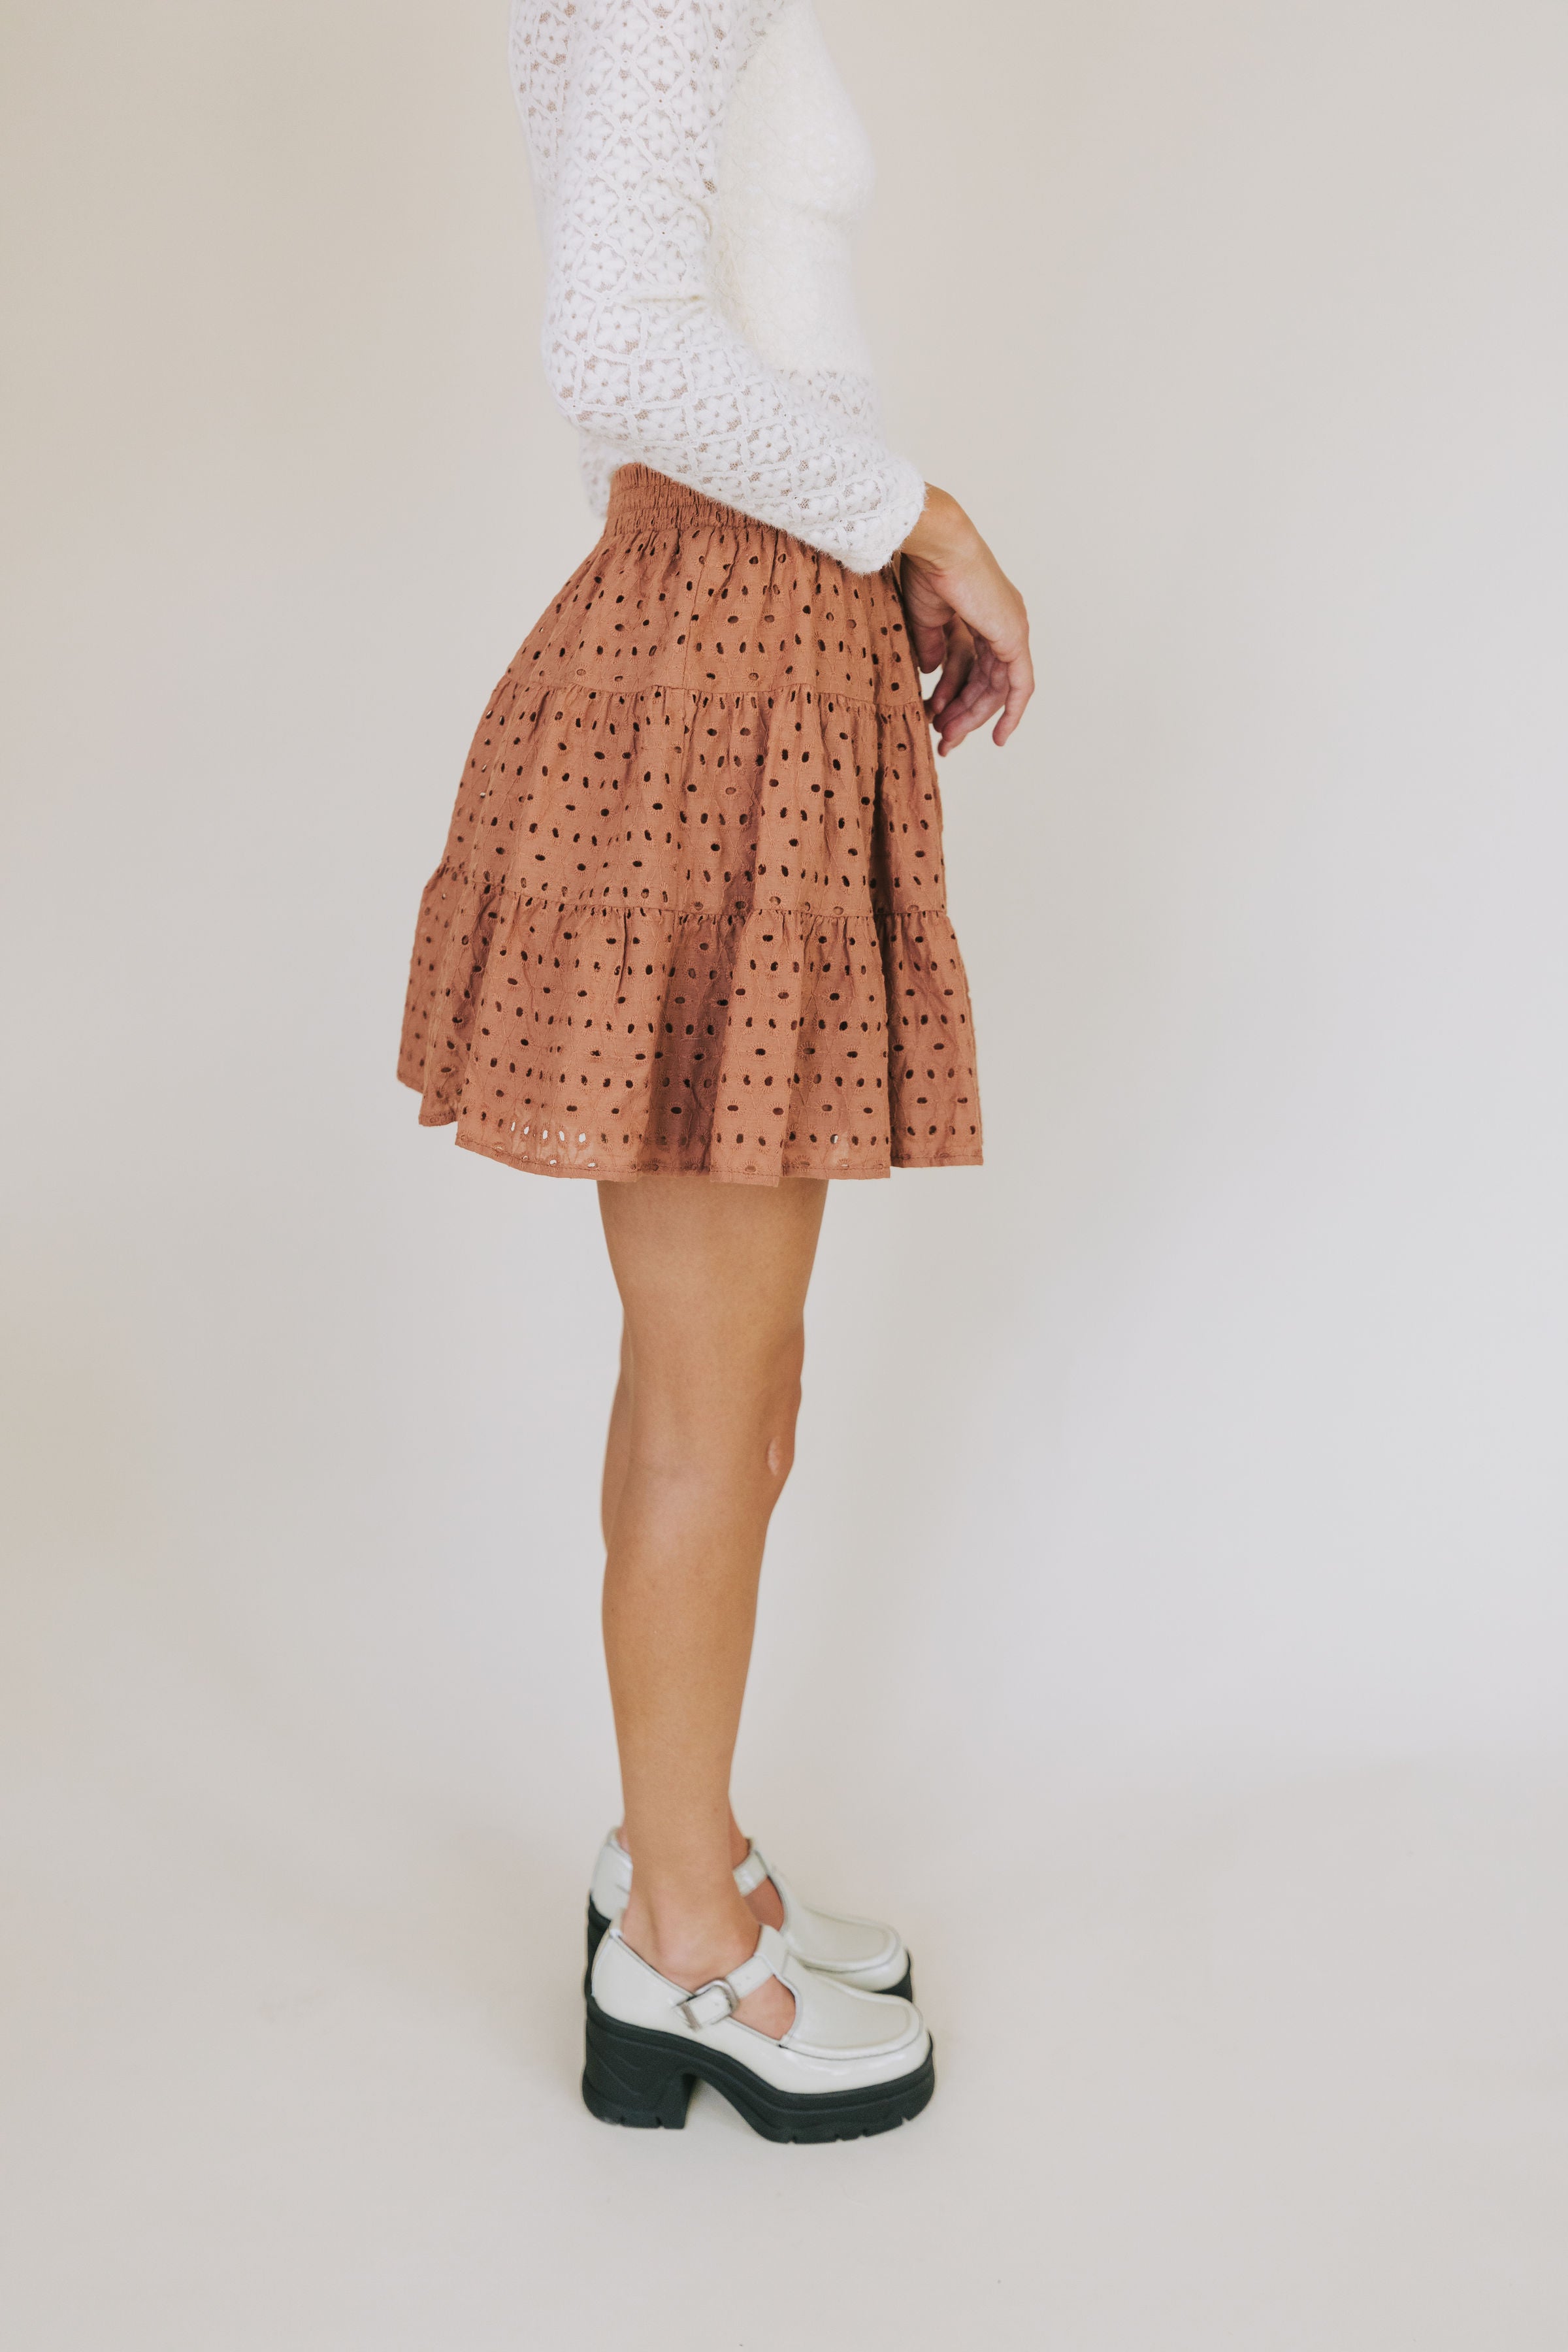 Homegrown Honey Skirt